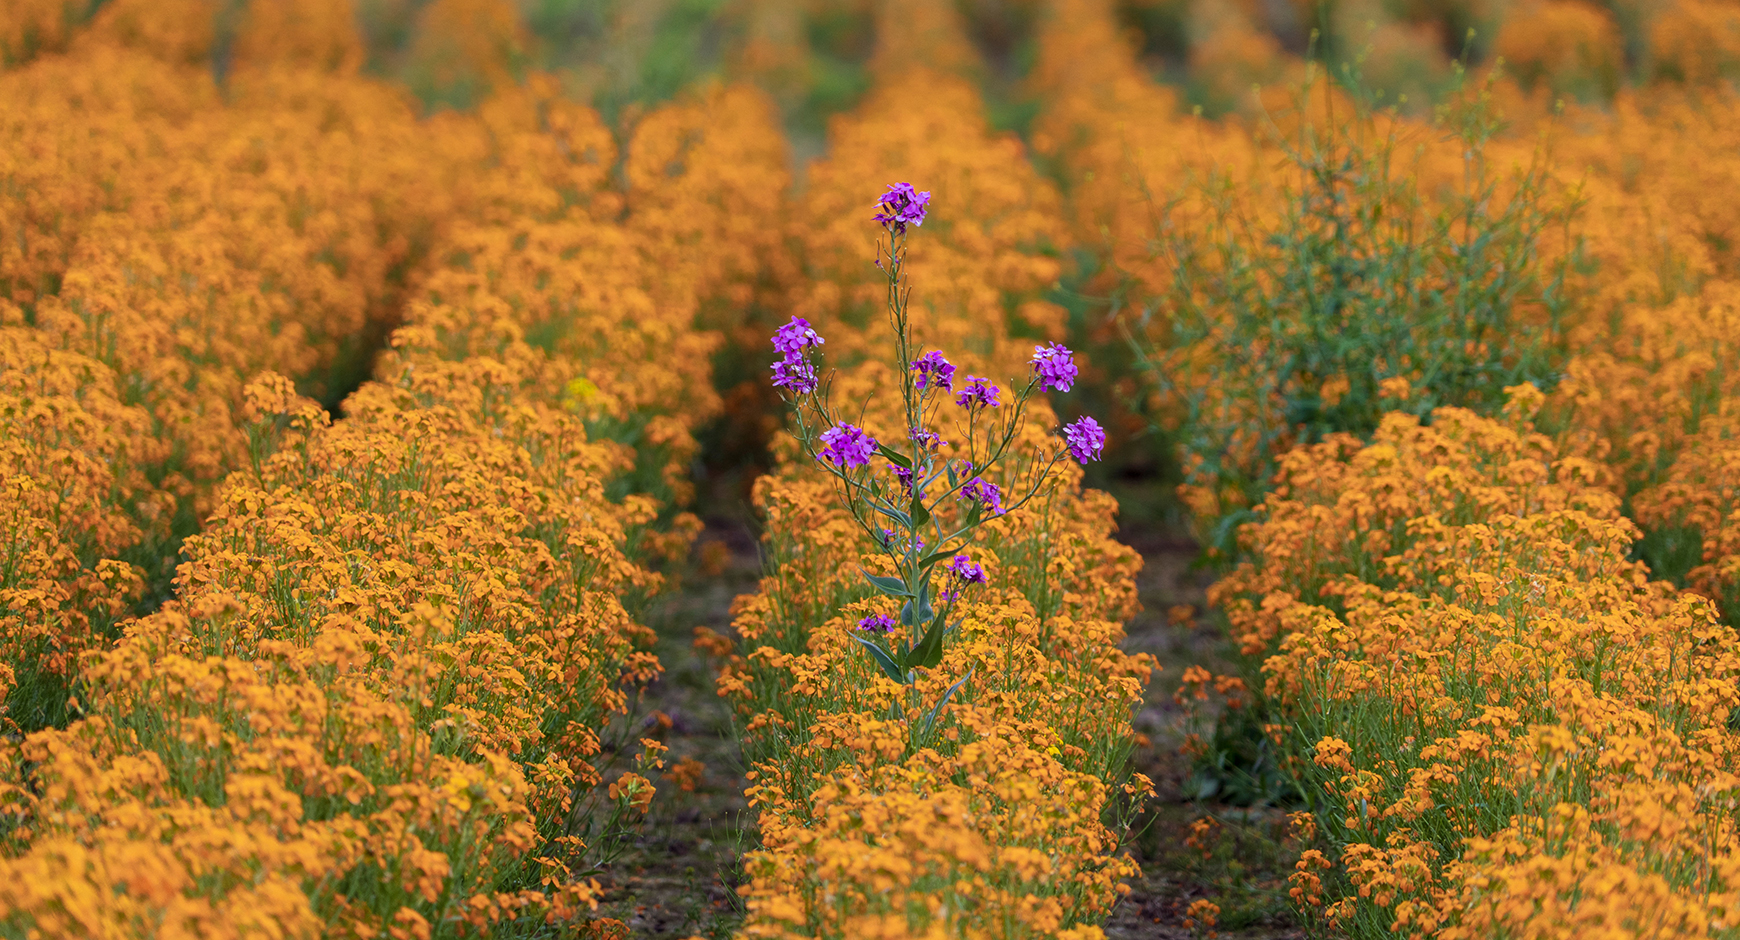 Photo of a field of flowers - by Dan Meyers on Unsplash